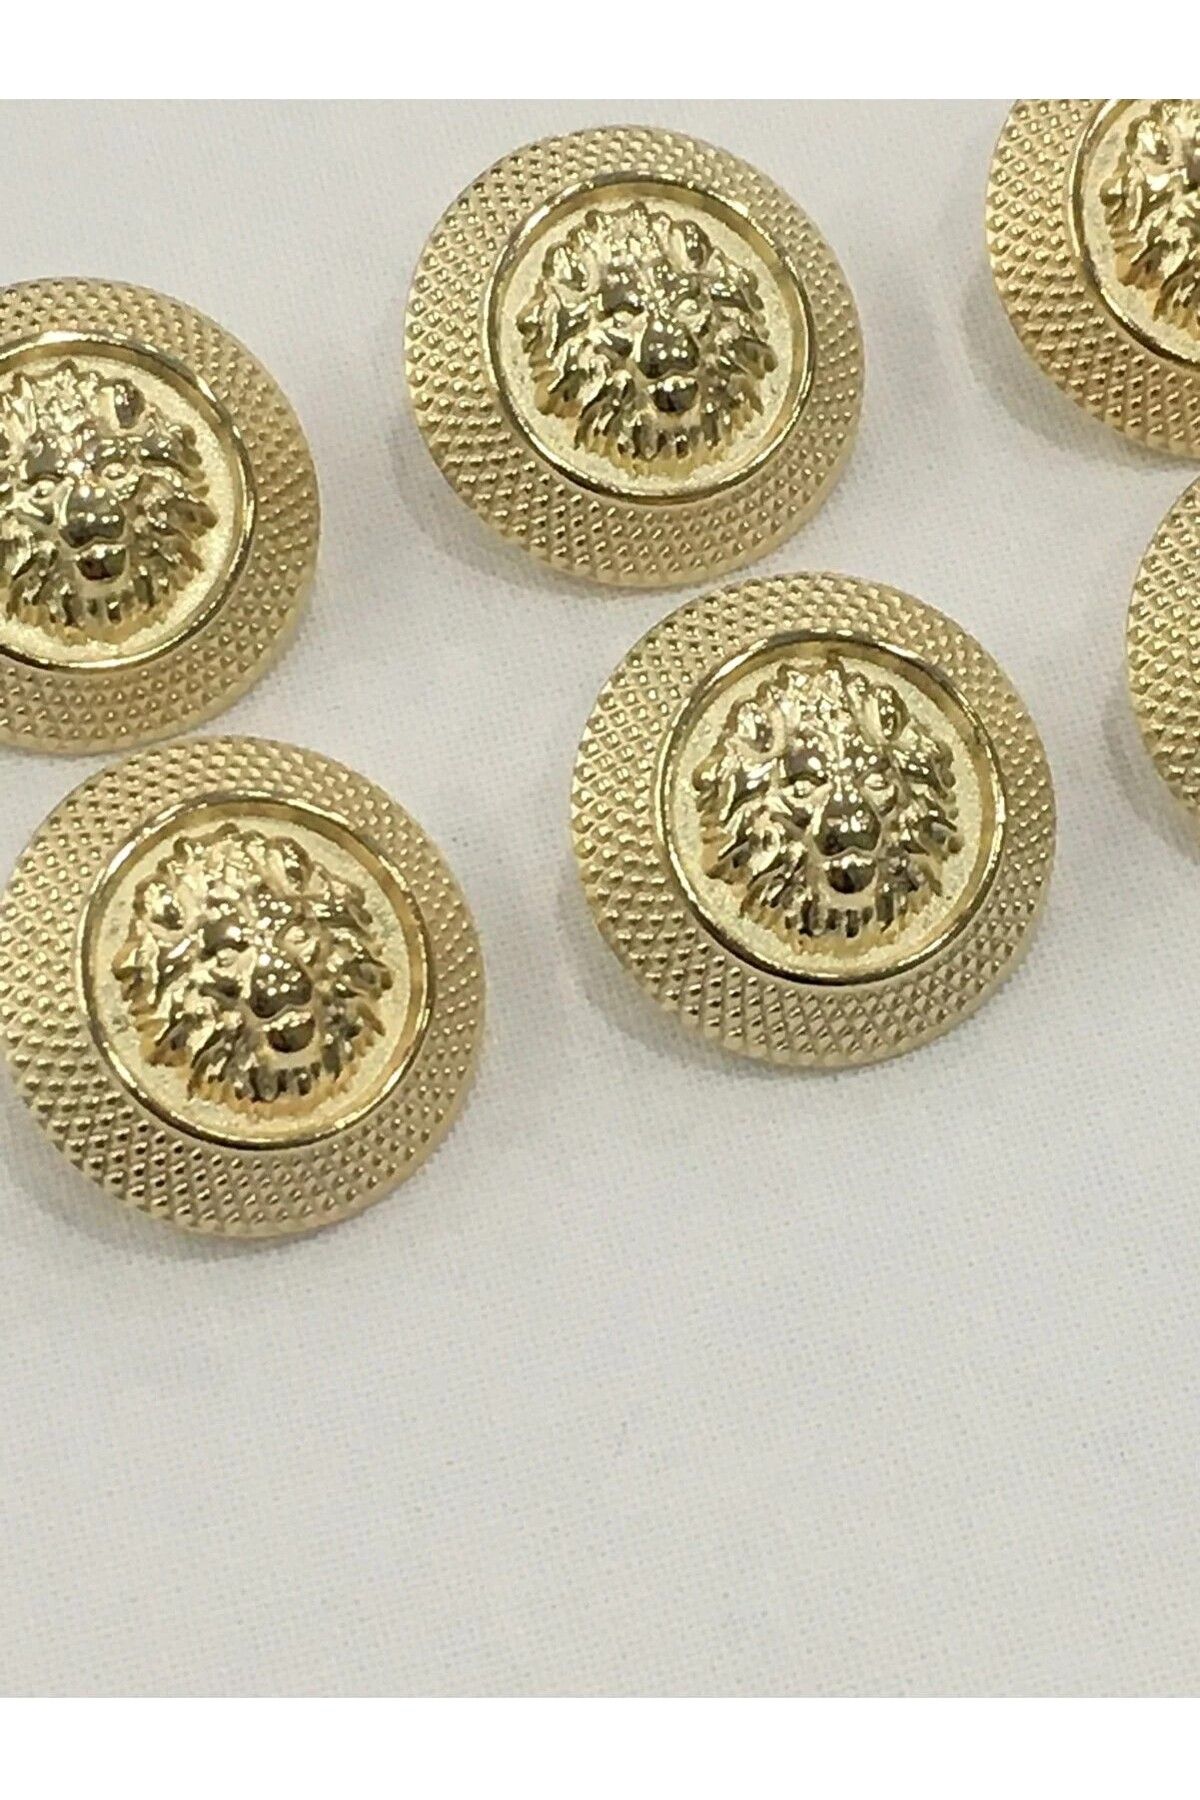 Zedhobi 6 Adet Aslan Desenli Gold Renk Trençkot Ve Blazer Ceket Düğmesi Seti Takımı